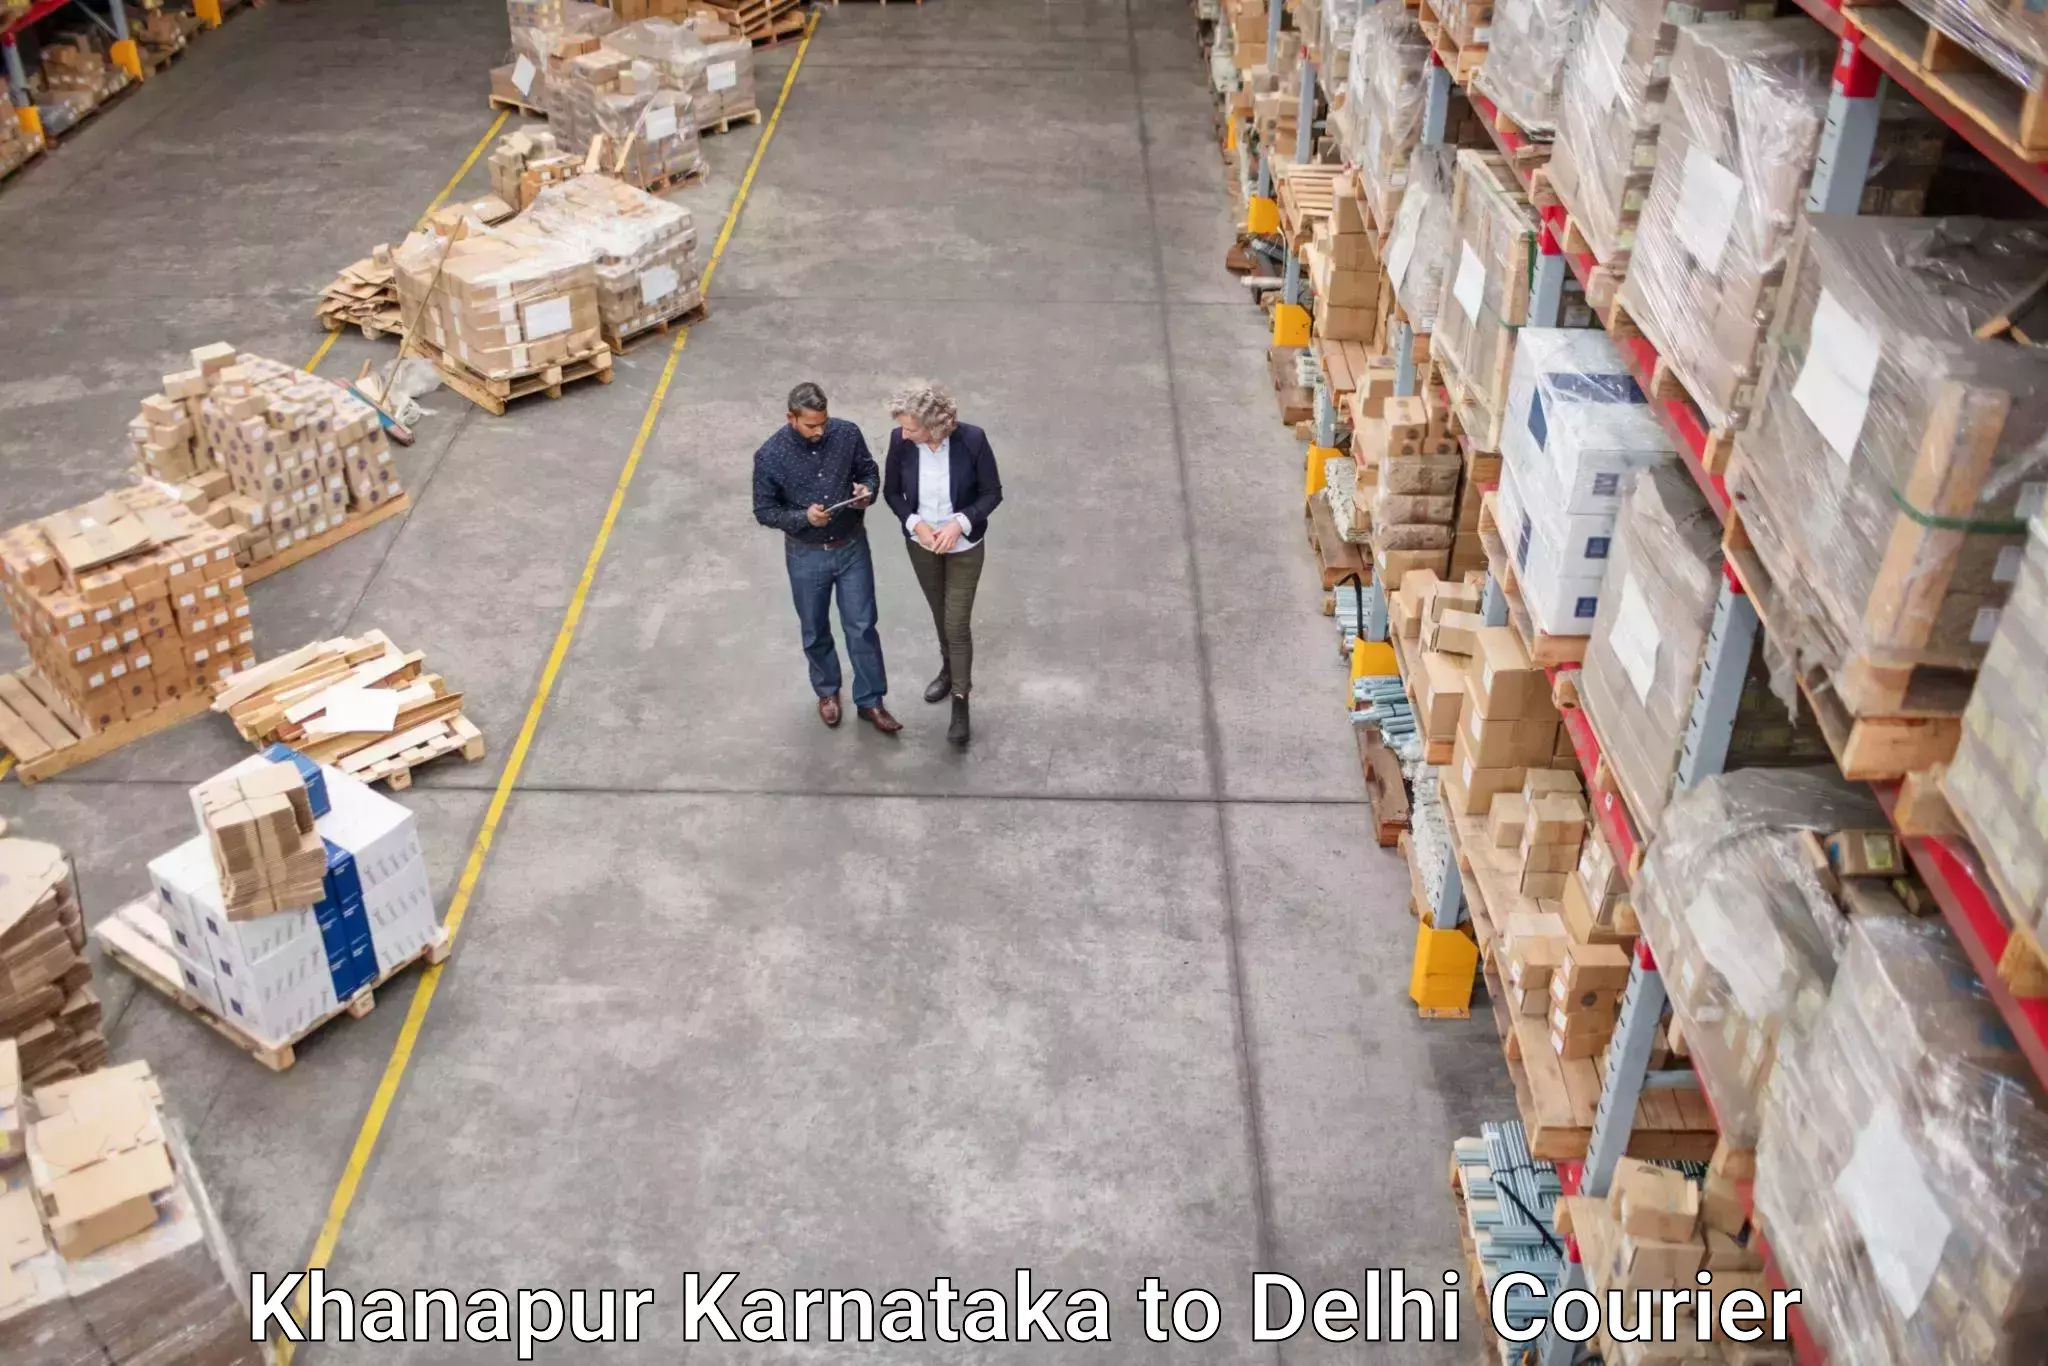 Rapid freight solutions Khanapur Karnataka to Sansad Marg